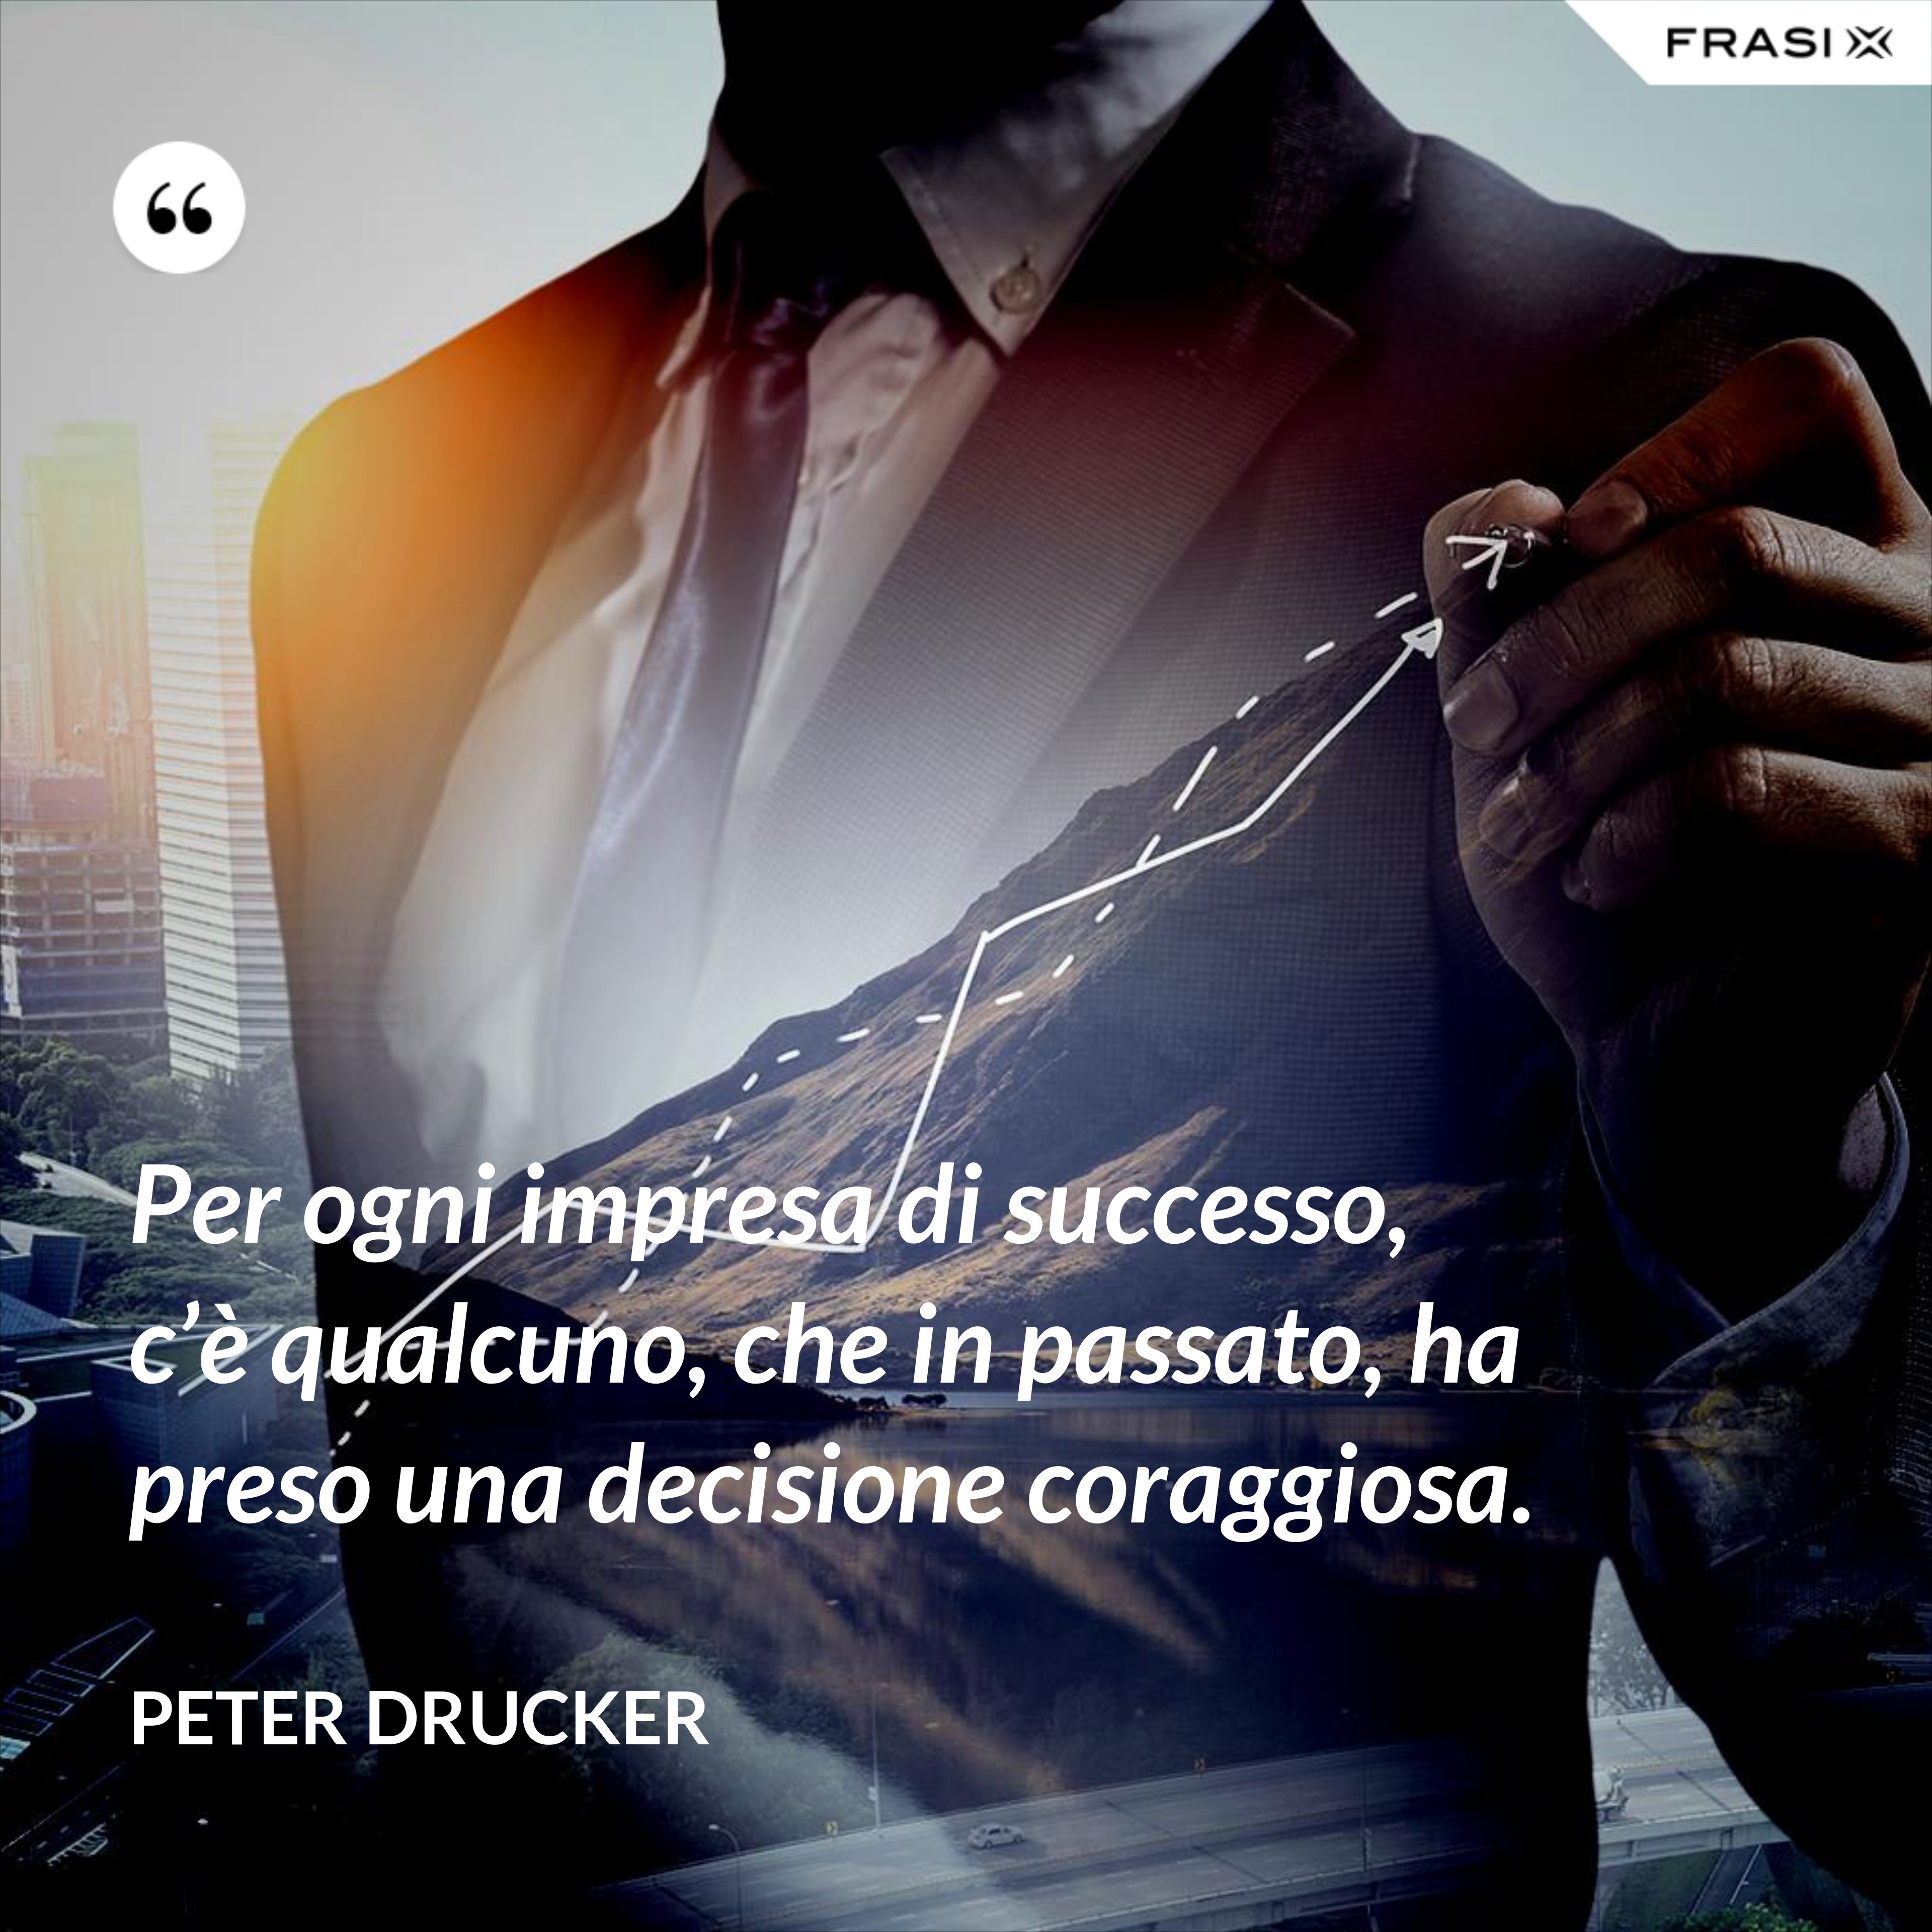 Per ogni impresa di successo, c’è qualcuno, che in passato, ha preso una decisione coraggiosa. - Peter Drucker